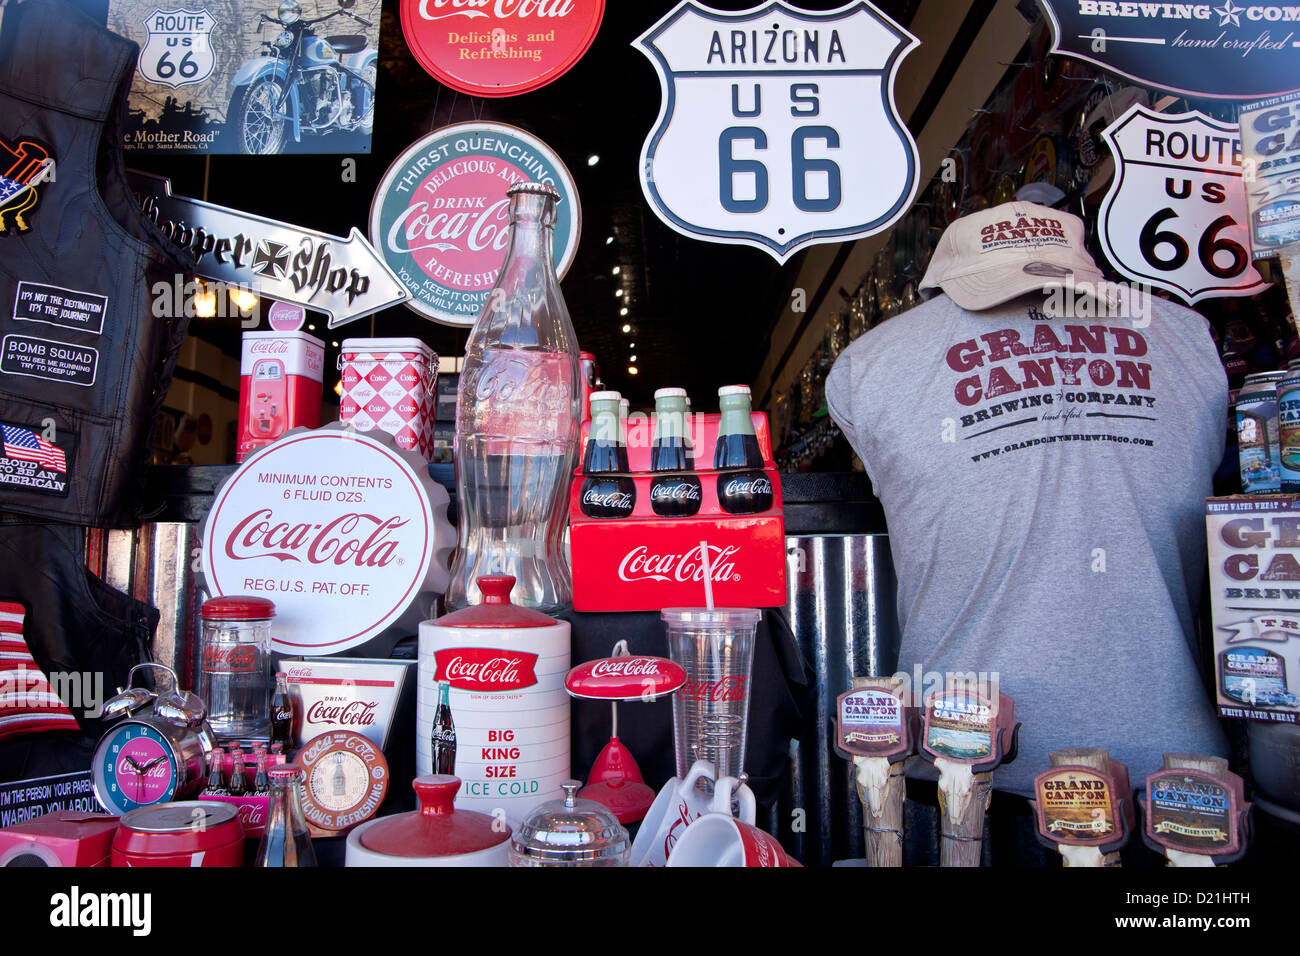 Tienda de souvenirs con Coca Cola y la Ruta 66 mercancías, Kingman, Arizona, Estados Unidos de América, EE.UU. Foto de stock